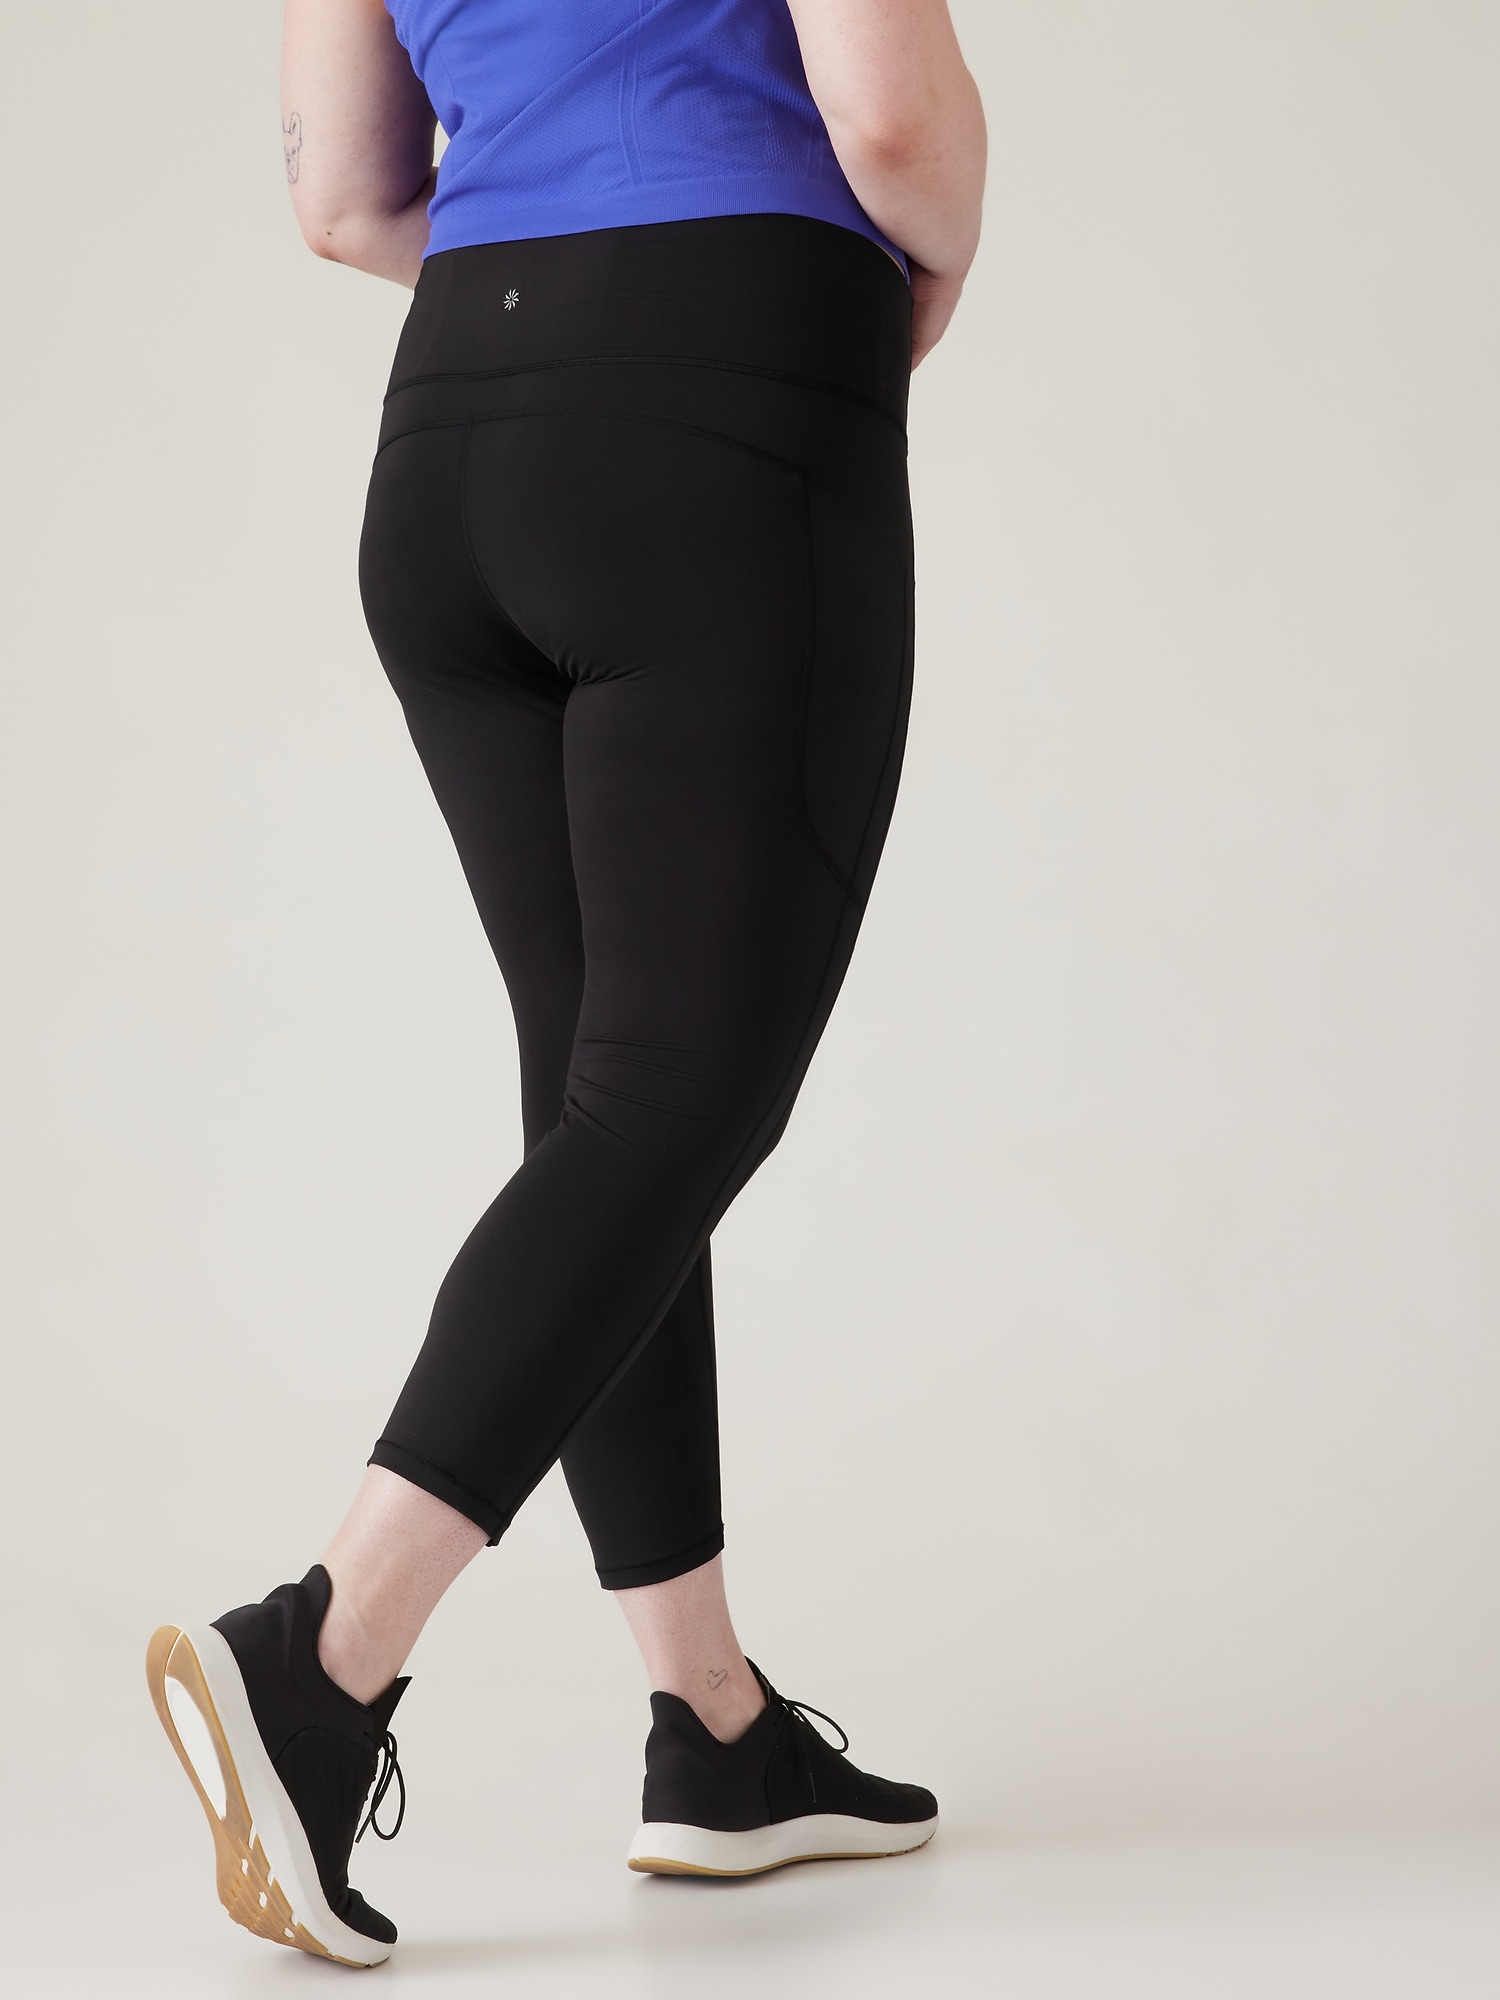 Lululemon leggings with pockets, size 6, 23”  Lululemon leggings with  pockets, Lululemon, Lululemon leggings